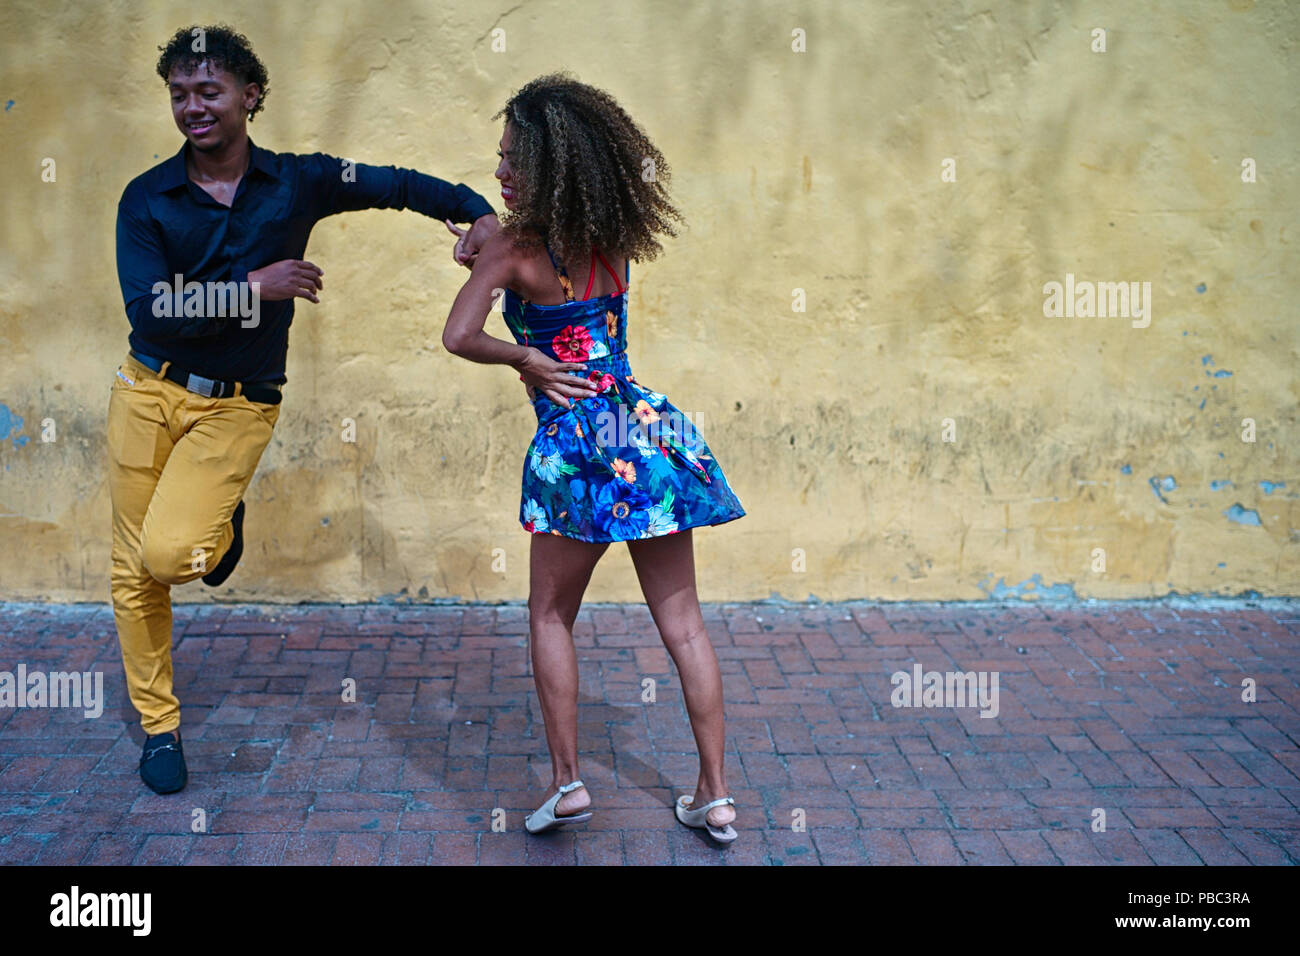 Two Colombian salsa dance instructors improvise a fun salsa dance at the Plaza del Reloj Stock Photo